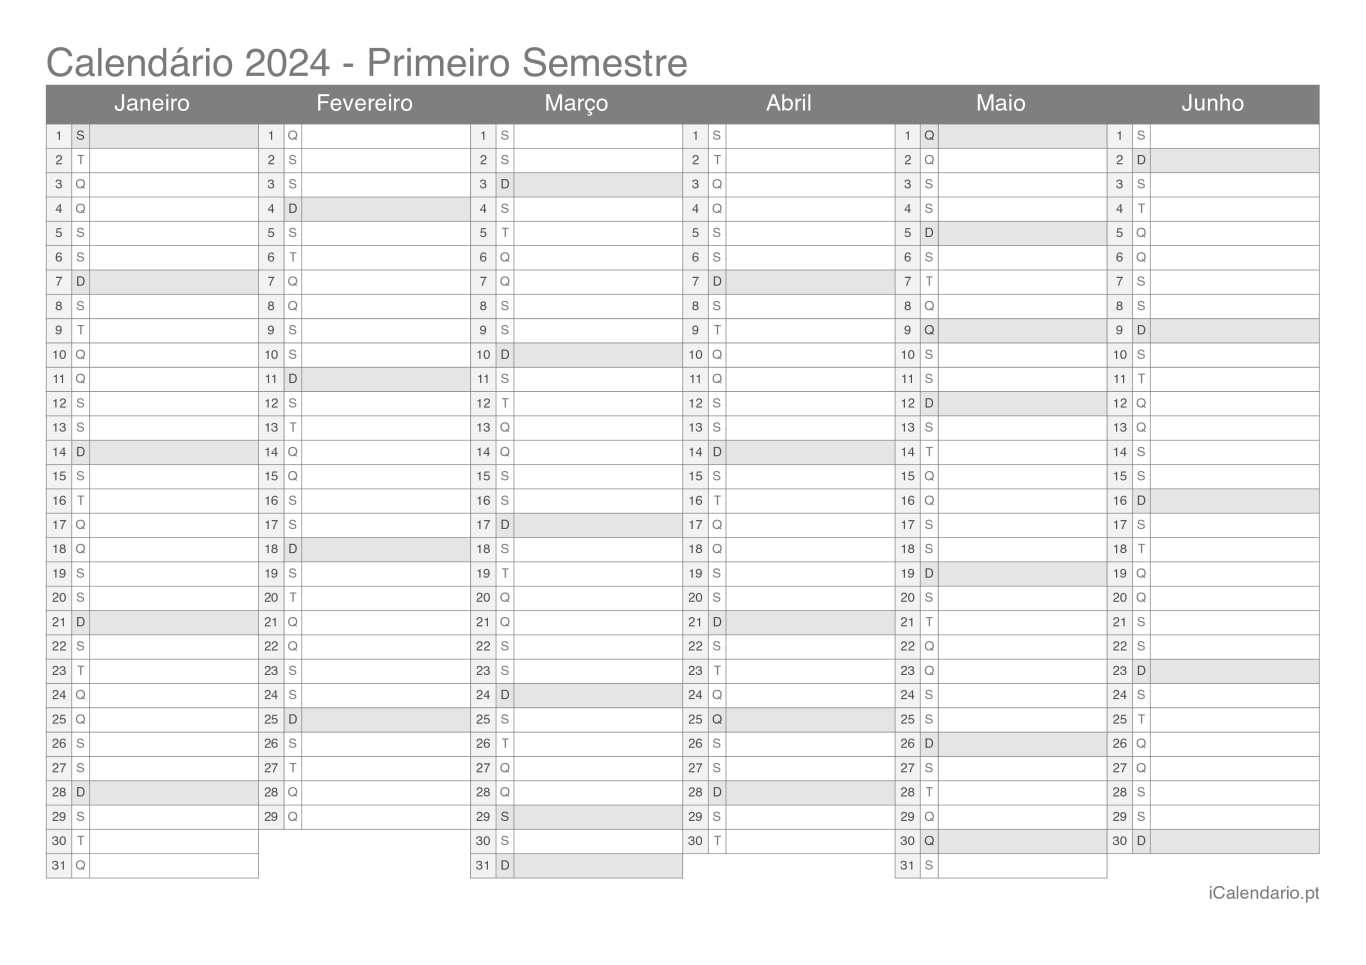 Calendário por semestre 2024